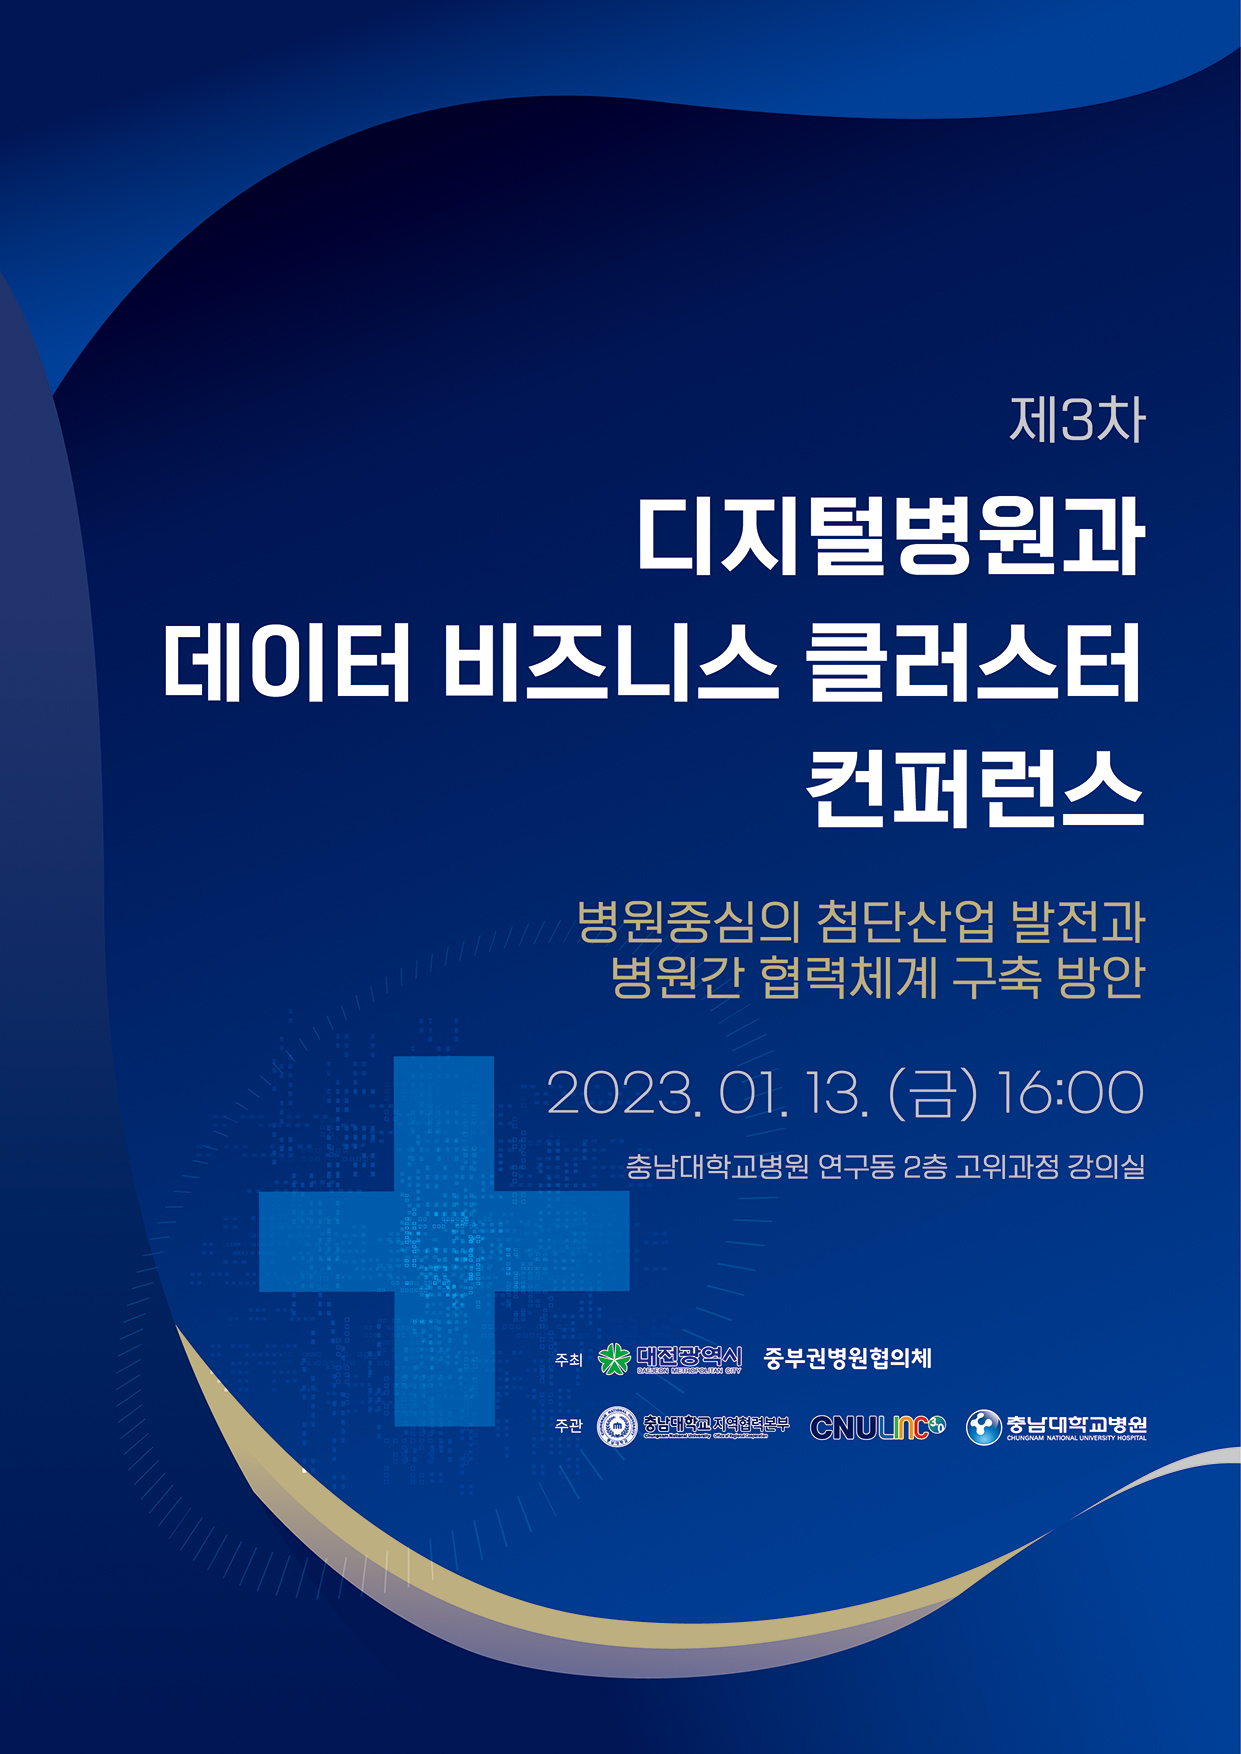 ‘제3차 디지털병원과 데이터 비즈니스 클러스터 컨퍼런스’ 개최 안내 포스터.